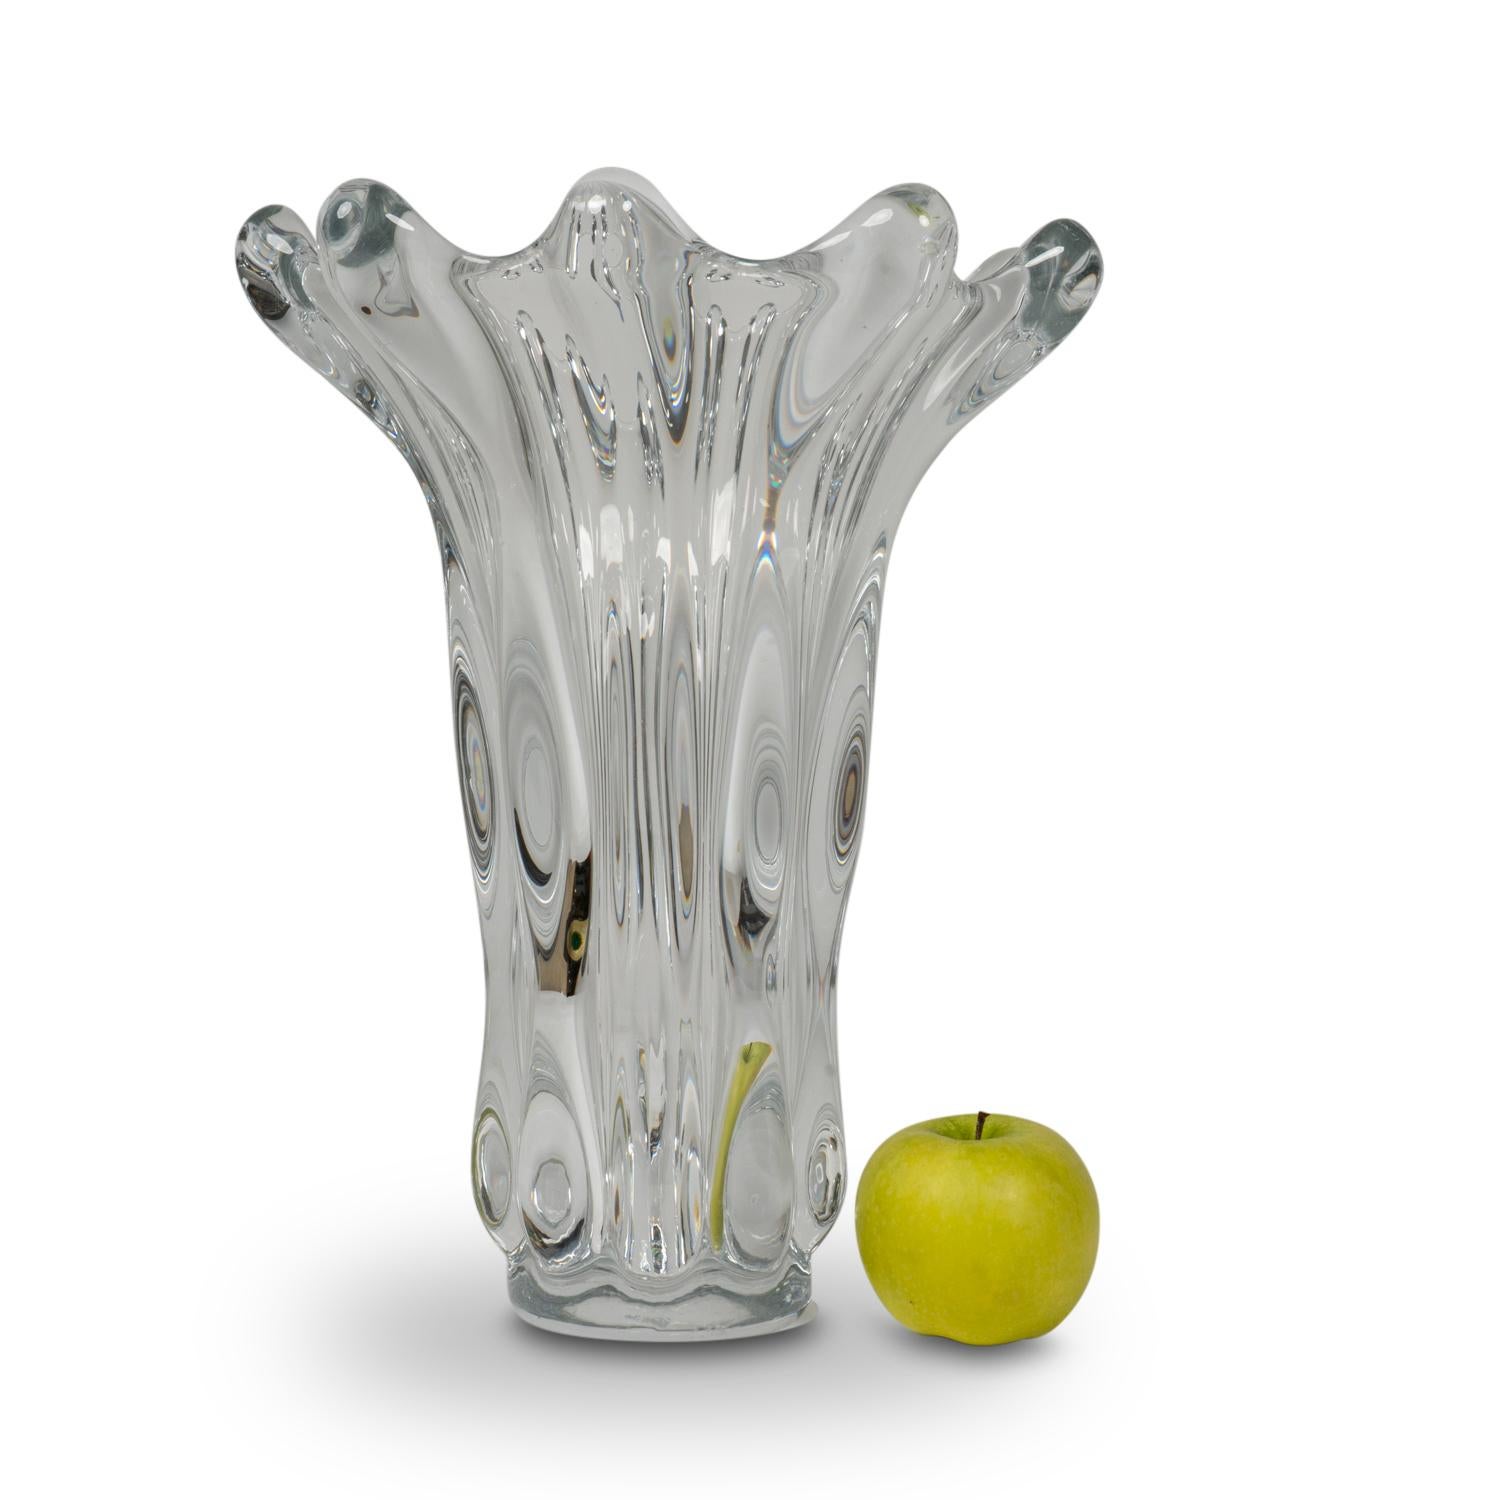 Art Vannes, signé. 
Vase en cristal soufflé à la main, en forme de corolle. Signé sous la base. 
Travail français réalisé dans les années 1920. 
